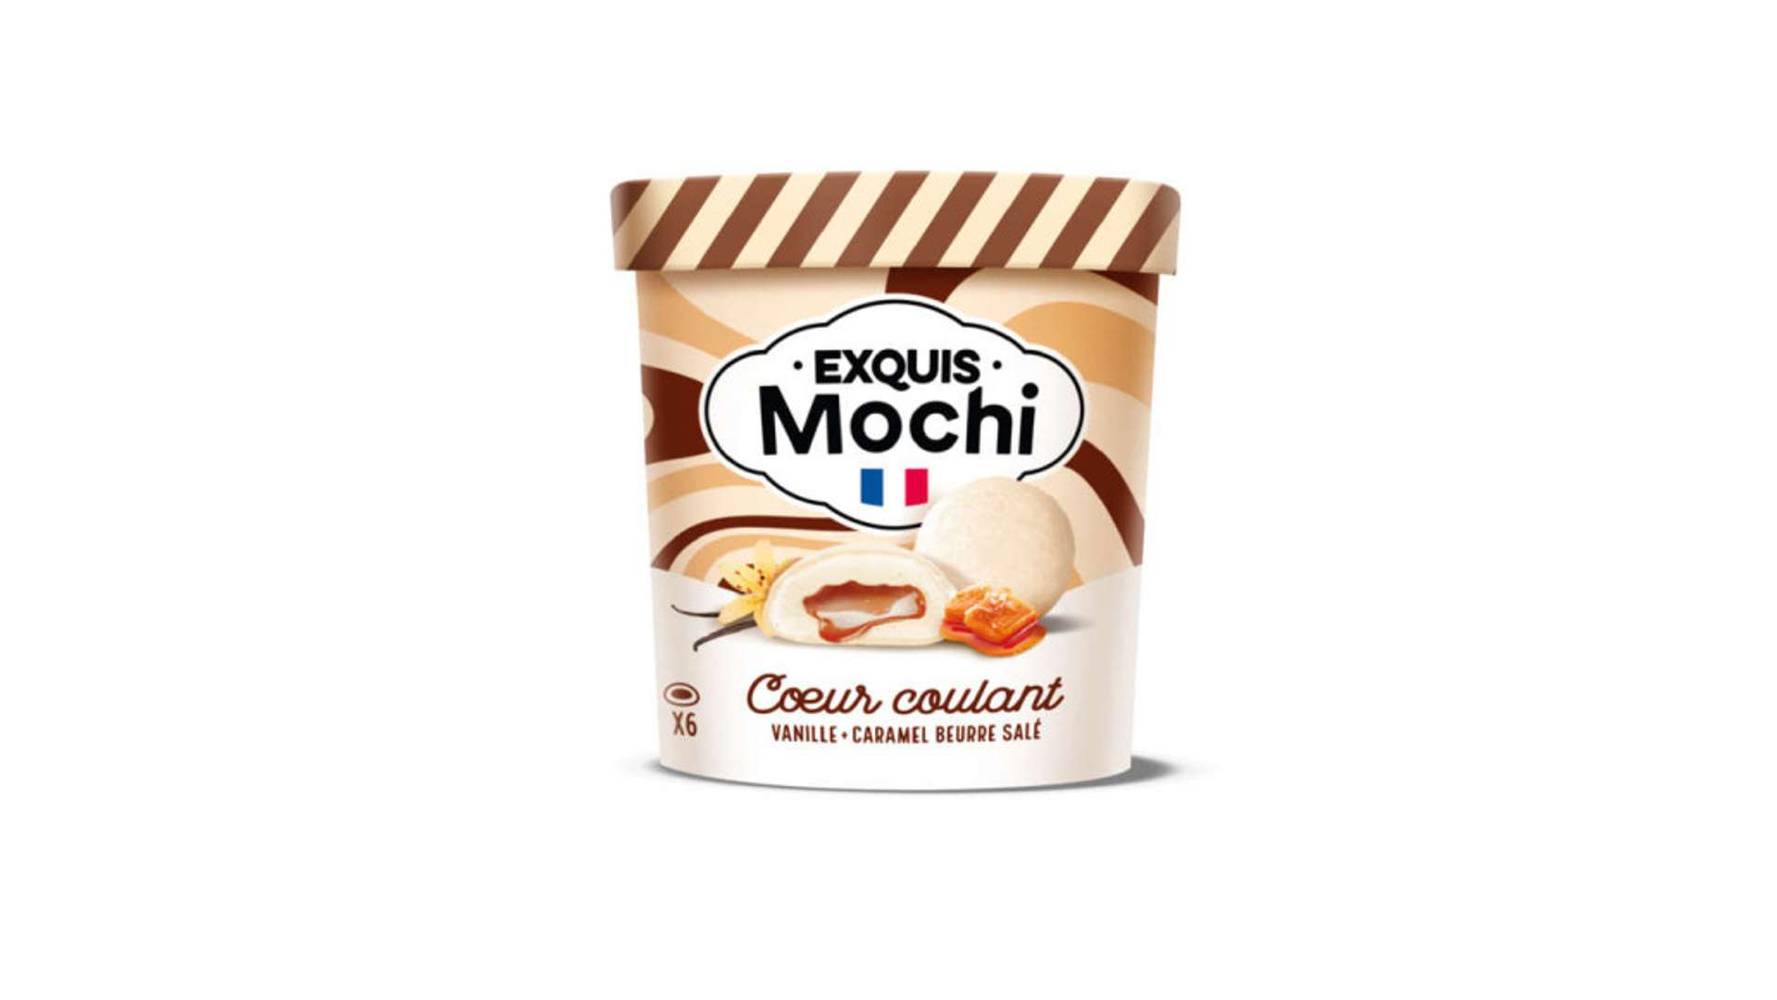 Exquis Mochis Mochis Vanille Coeur coulant caramel beurre sale La boite de 6